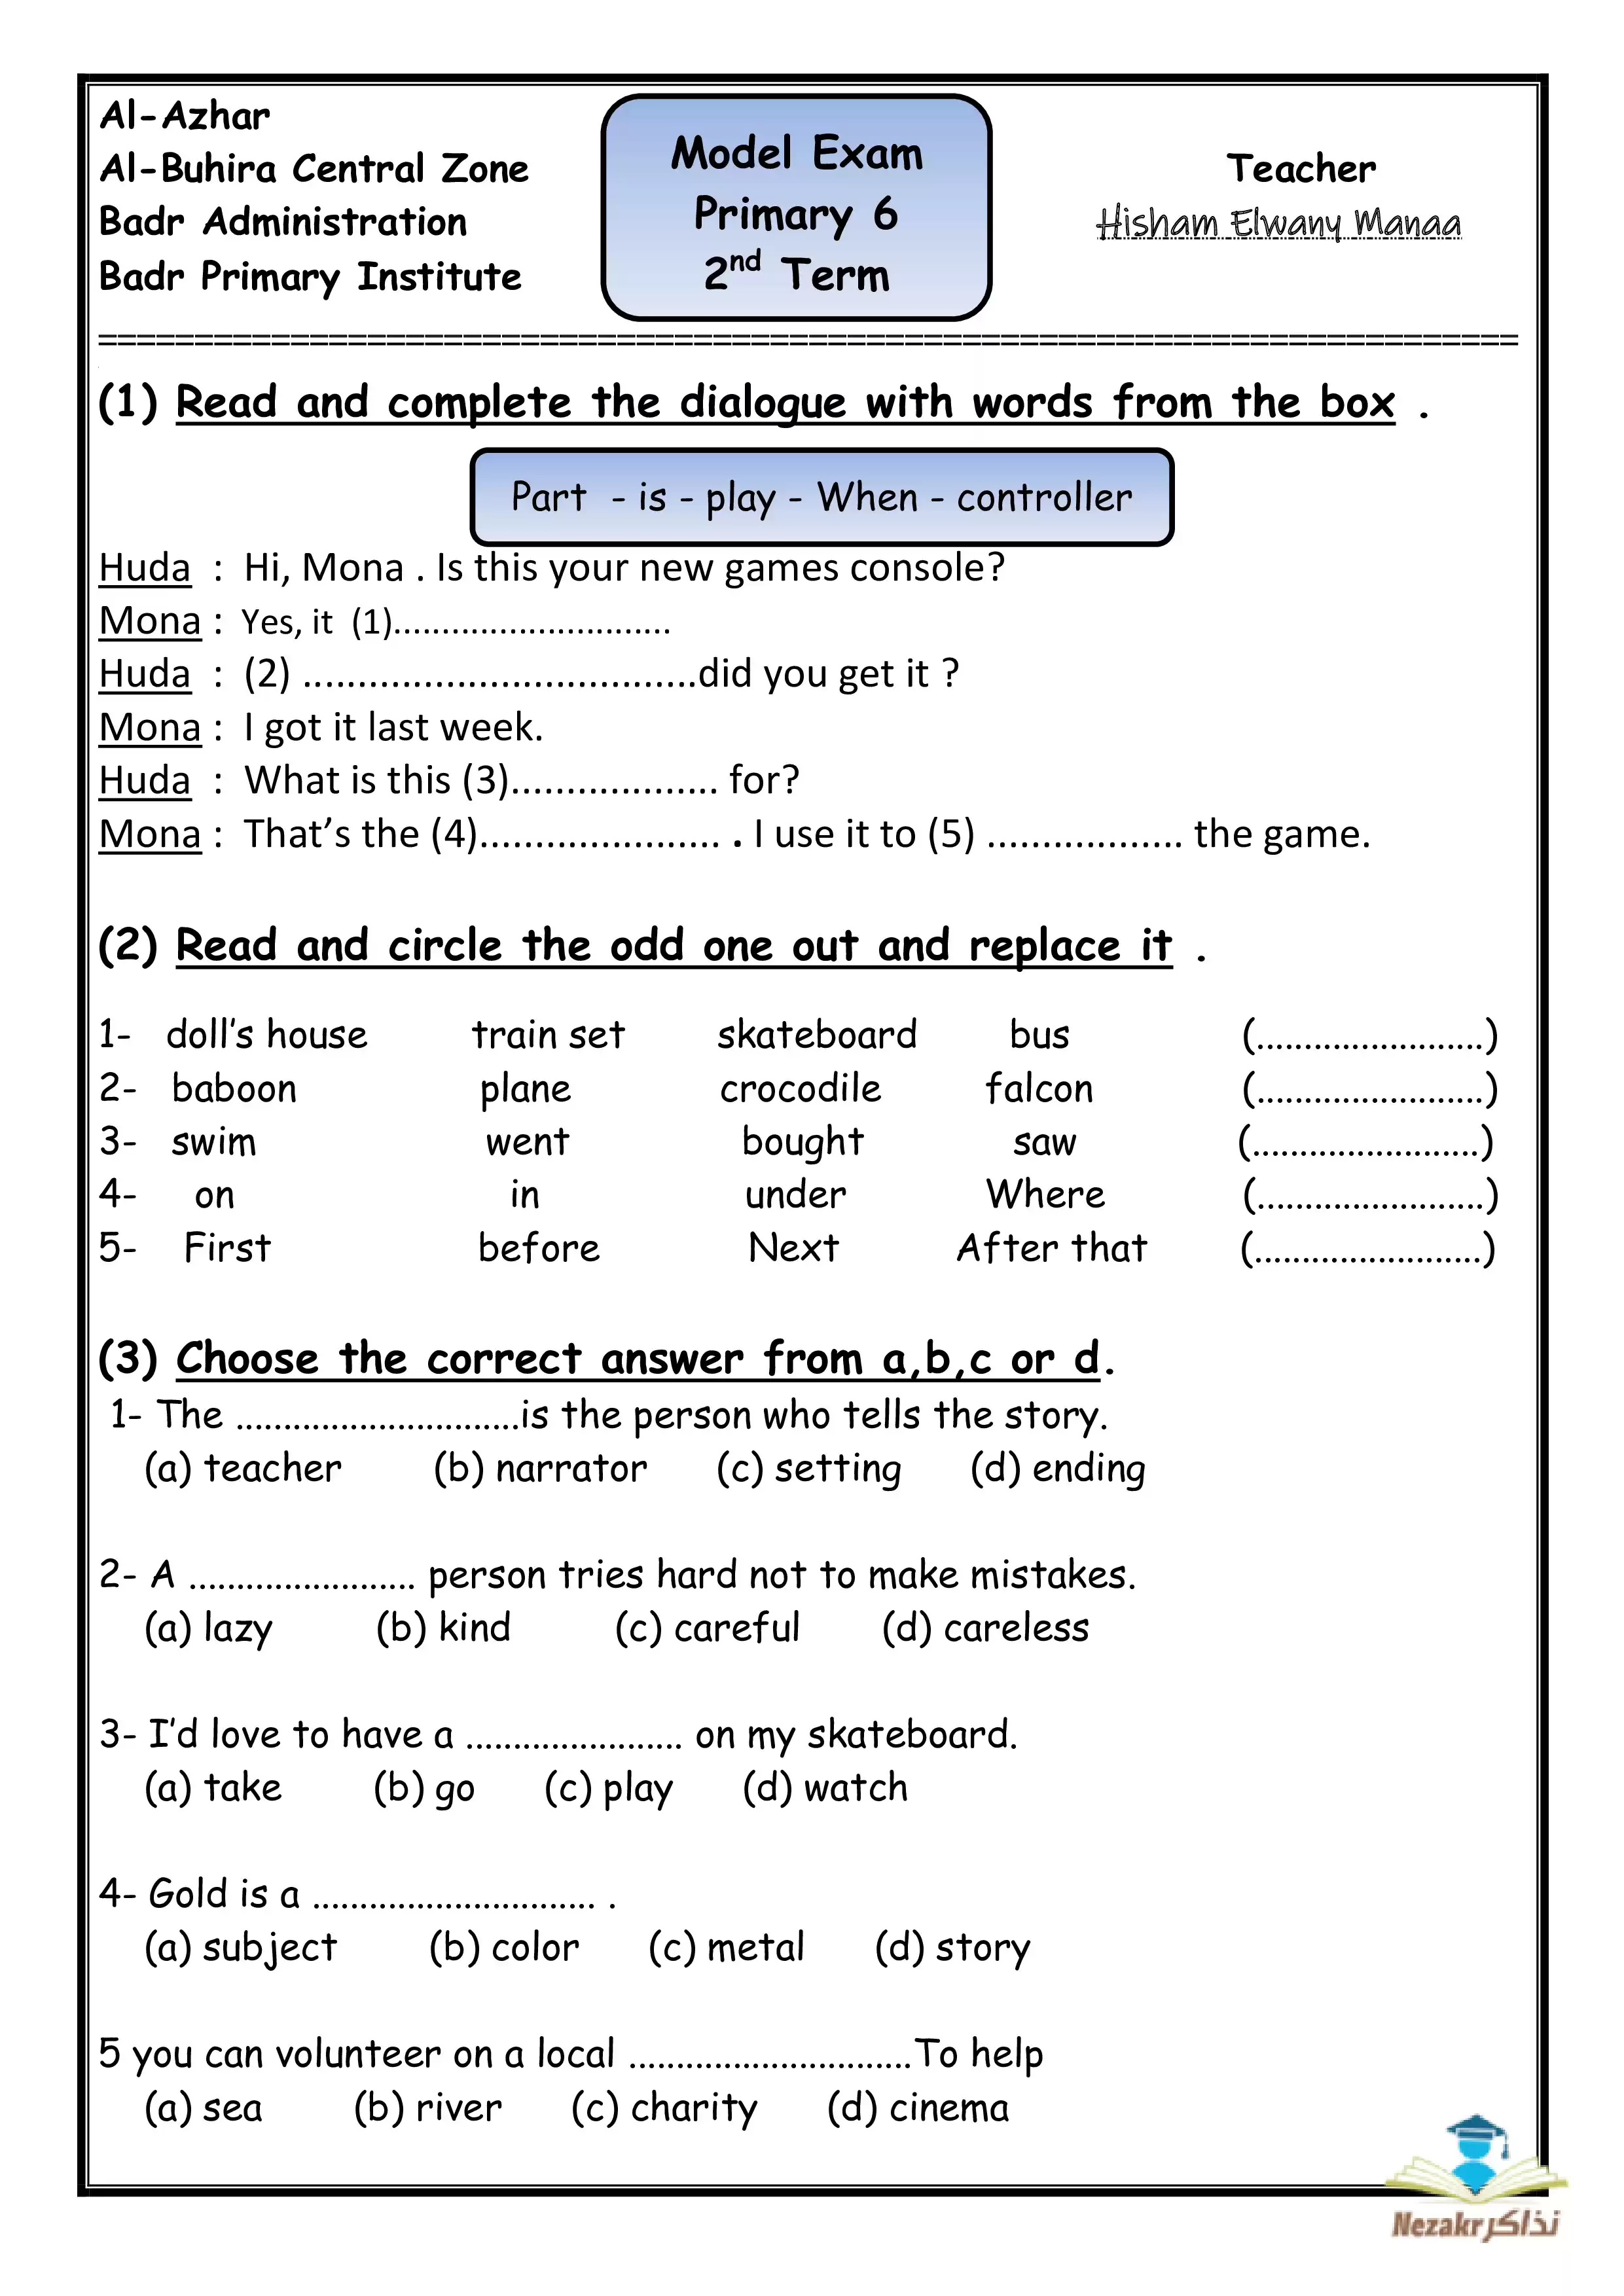 نموذج امتحان لغة إنجليزية للصف السادس الابتدائي الترم الثاني